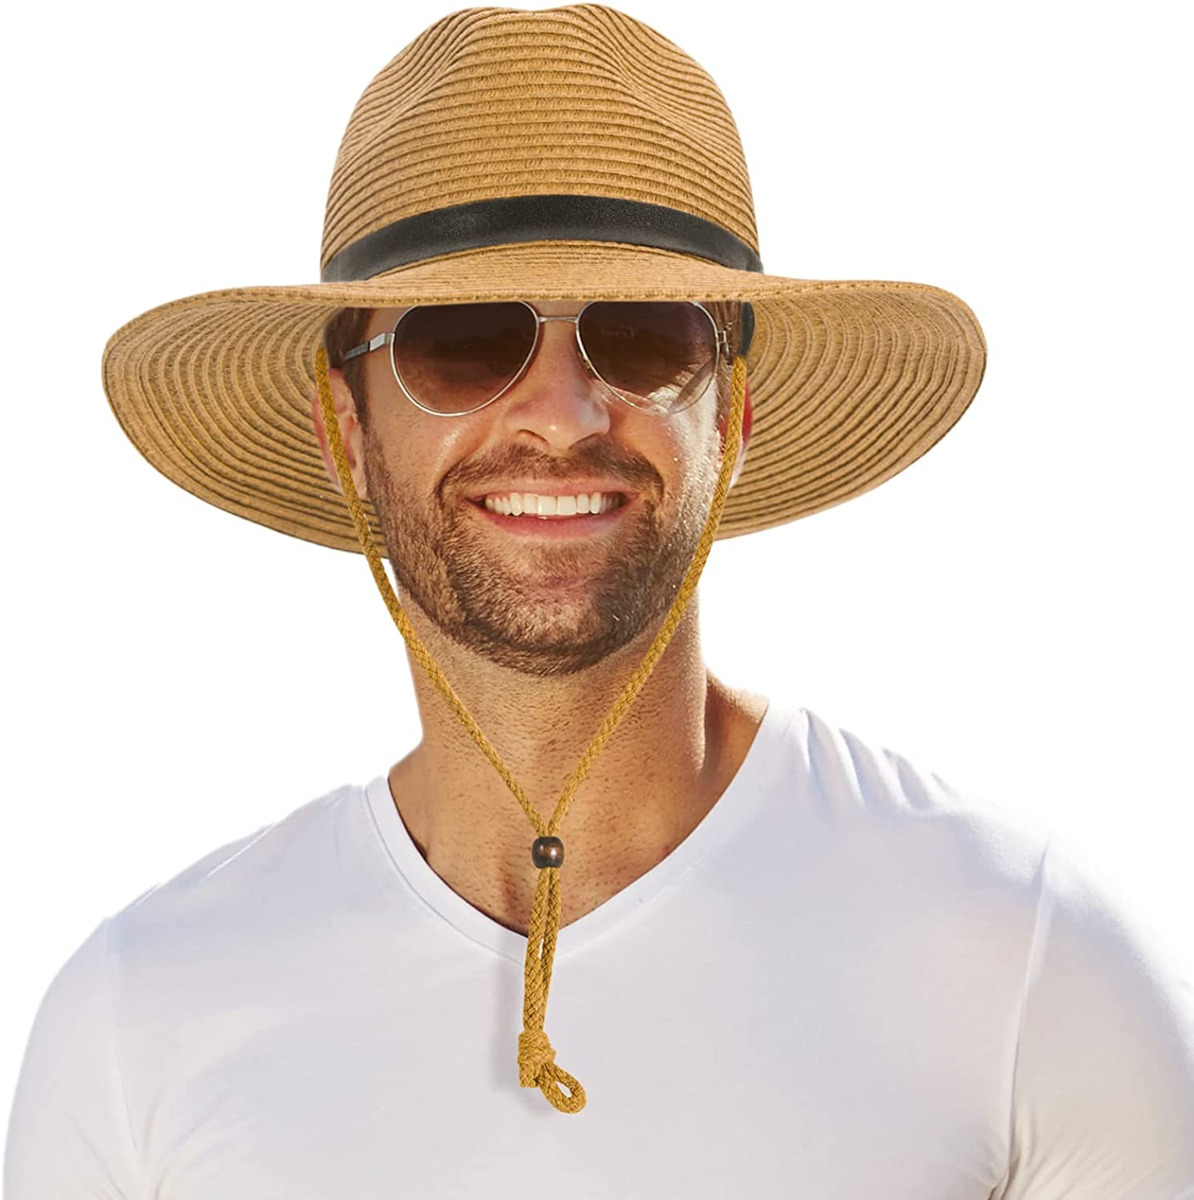 Men Wide Brim Straw Hat,Man Summer Beach Sun Hat UPF50+, Sun